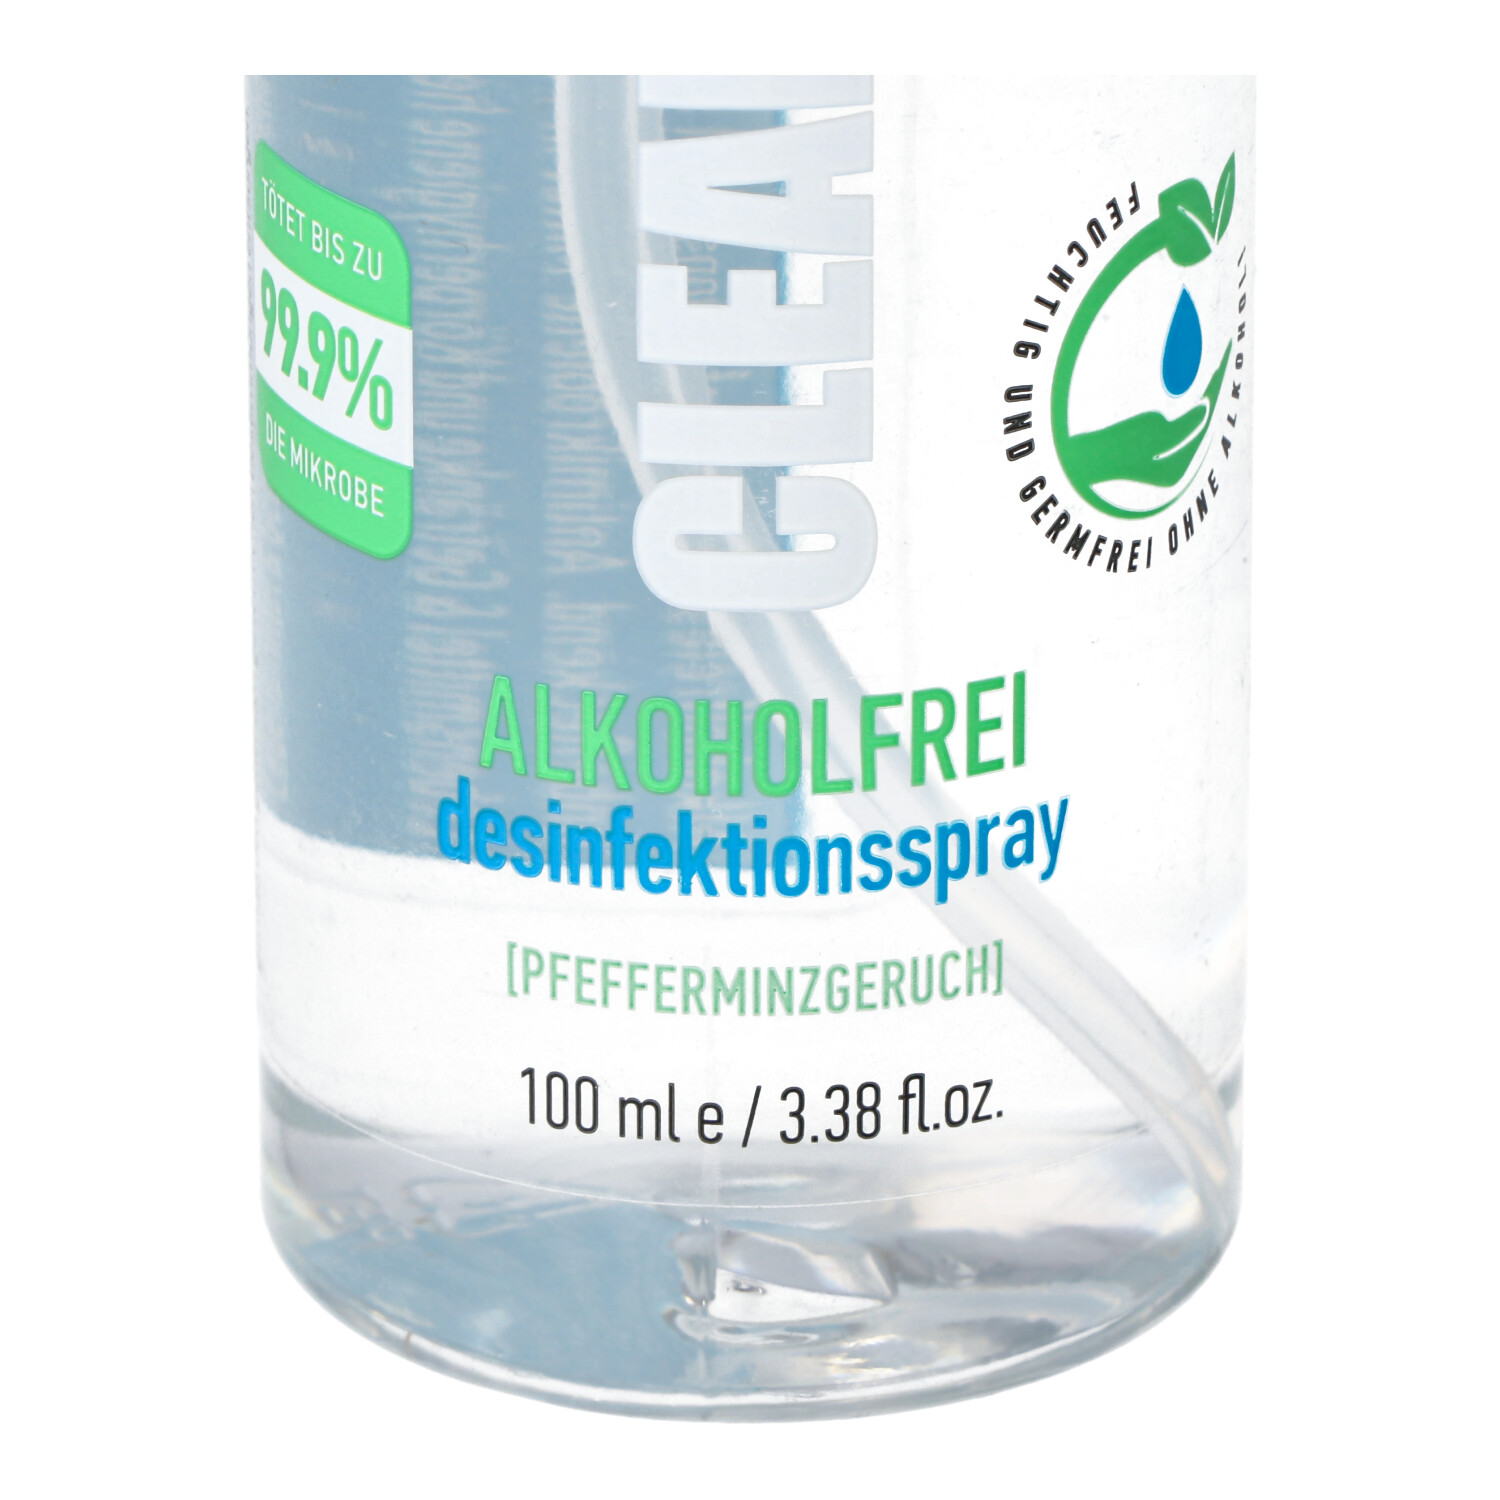 Drop Clean, das alkoholfreie Desinfektionsmittel, 100ml Hände-Desinfektionsspray mit angenehmen Minzduft